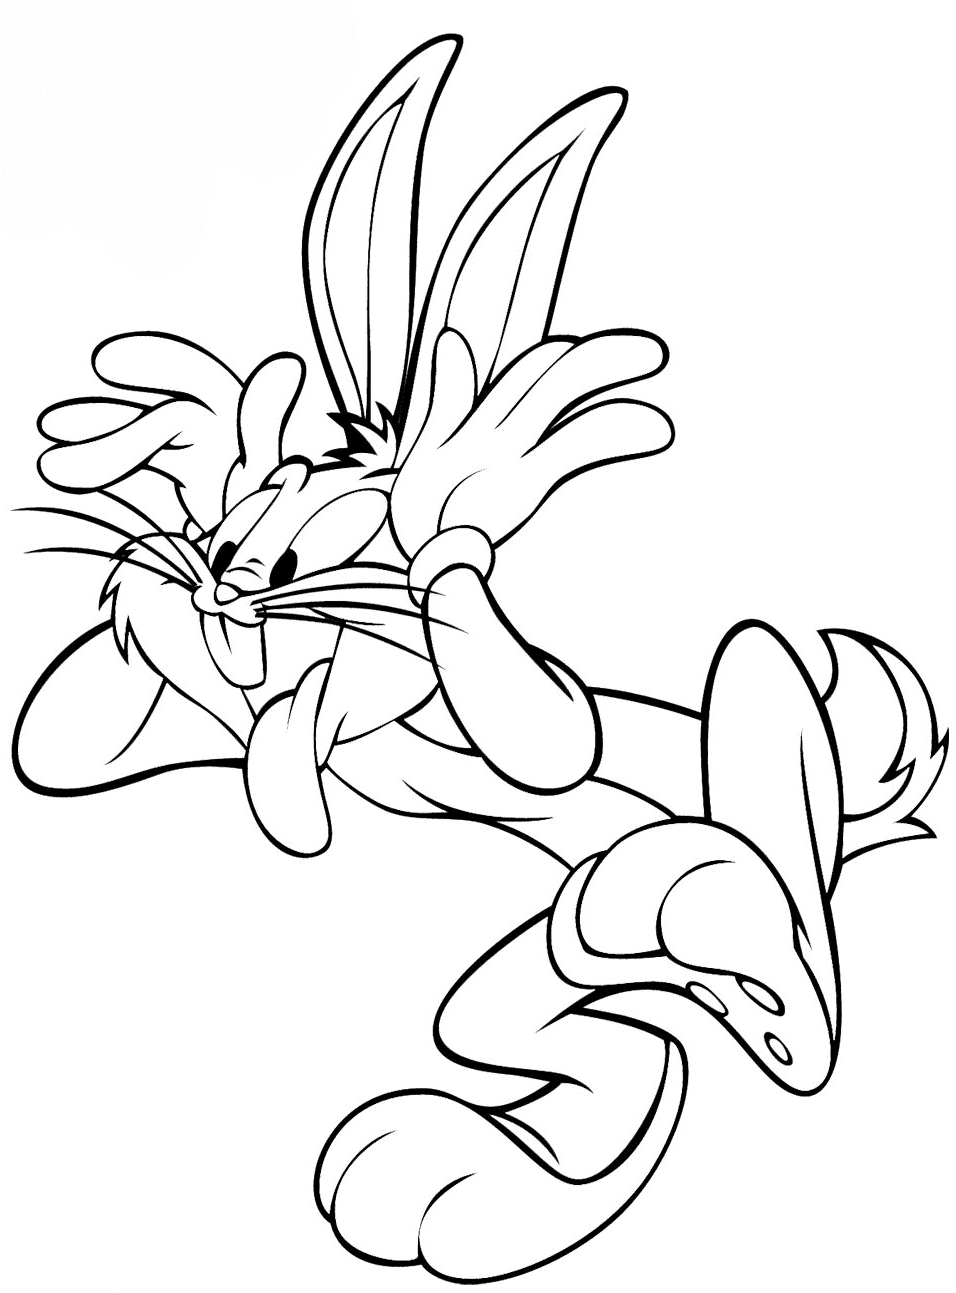 El tonto Bugs Bunny de los personajes de Looney Tunes